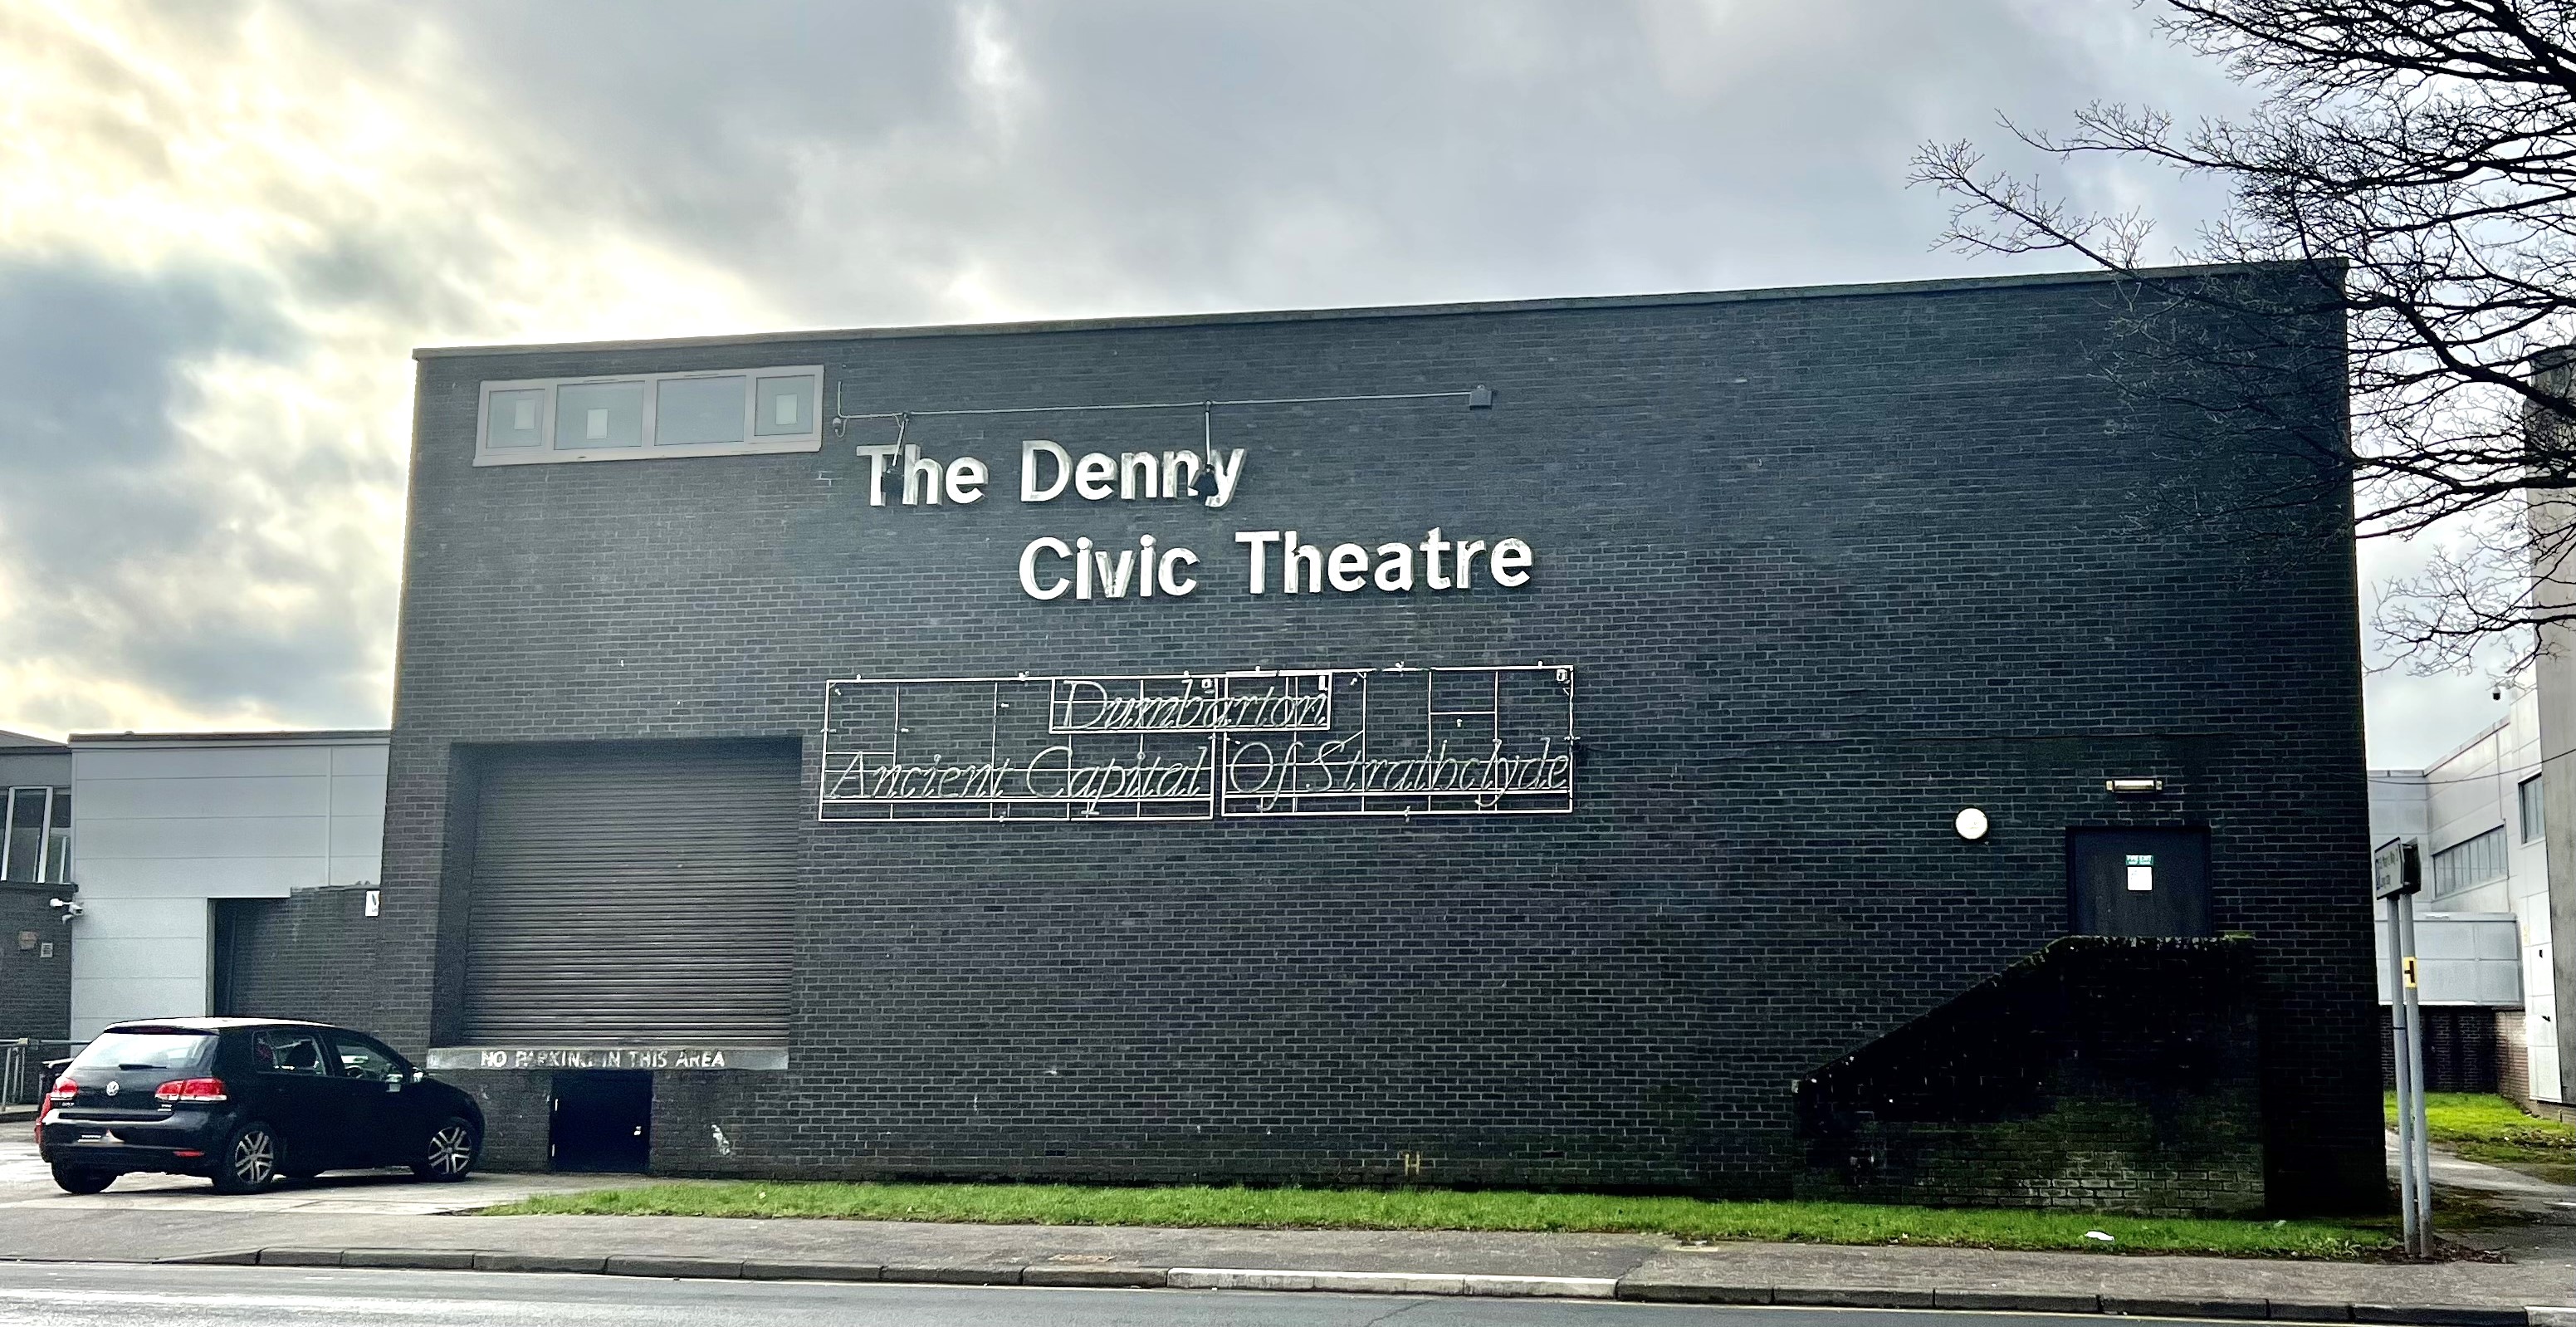 The Denny Civic Theatre